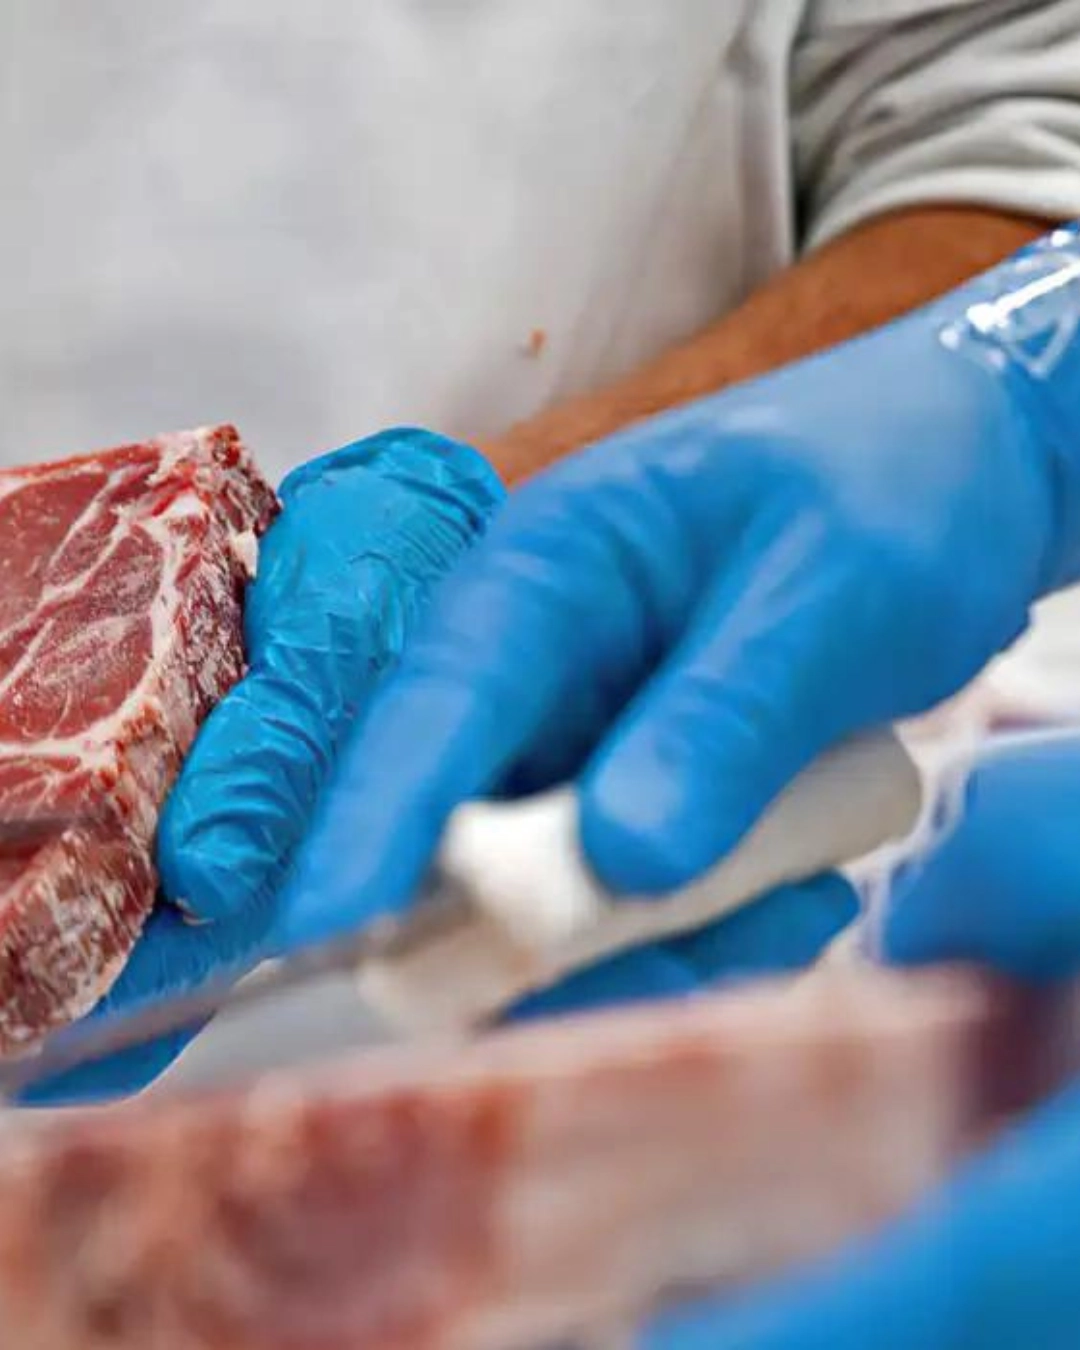 Imagem de destaque - RS receberá 2 milhões de quilos de carne em doação de empresas, diz Lula